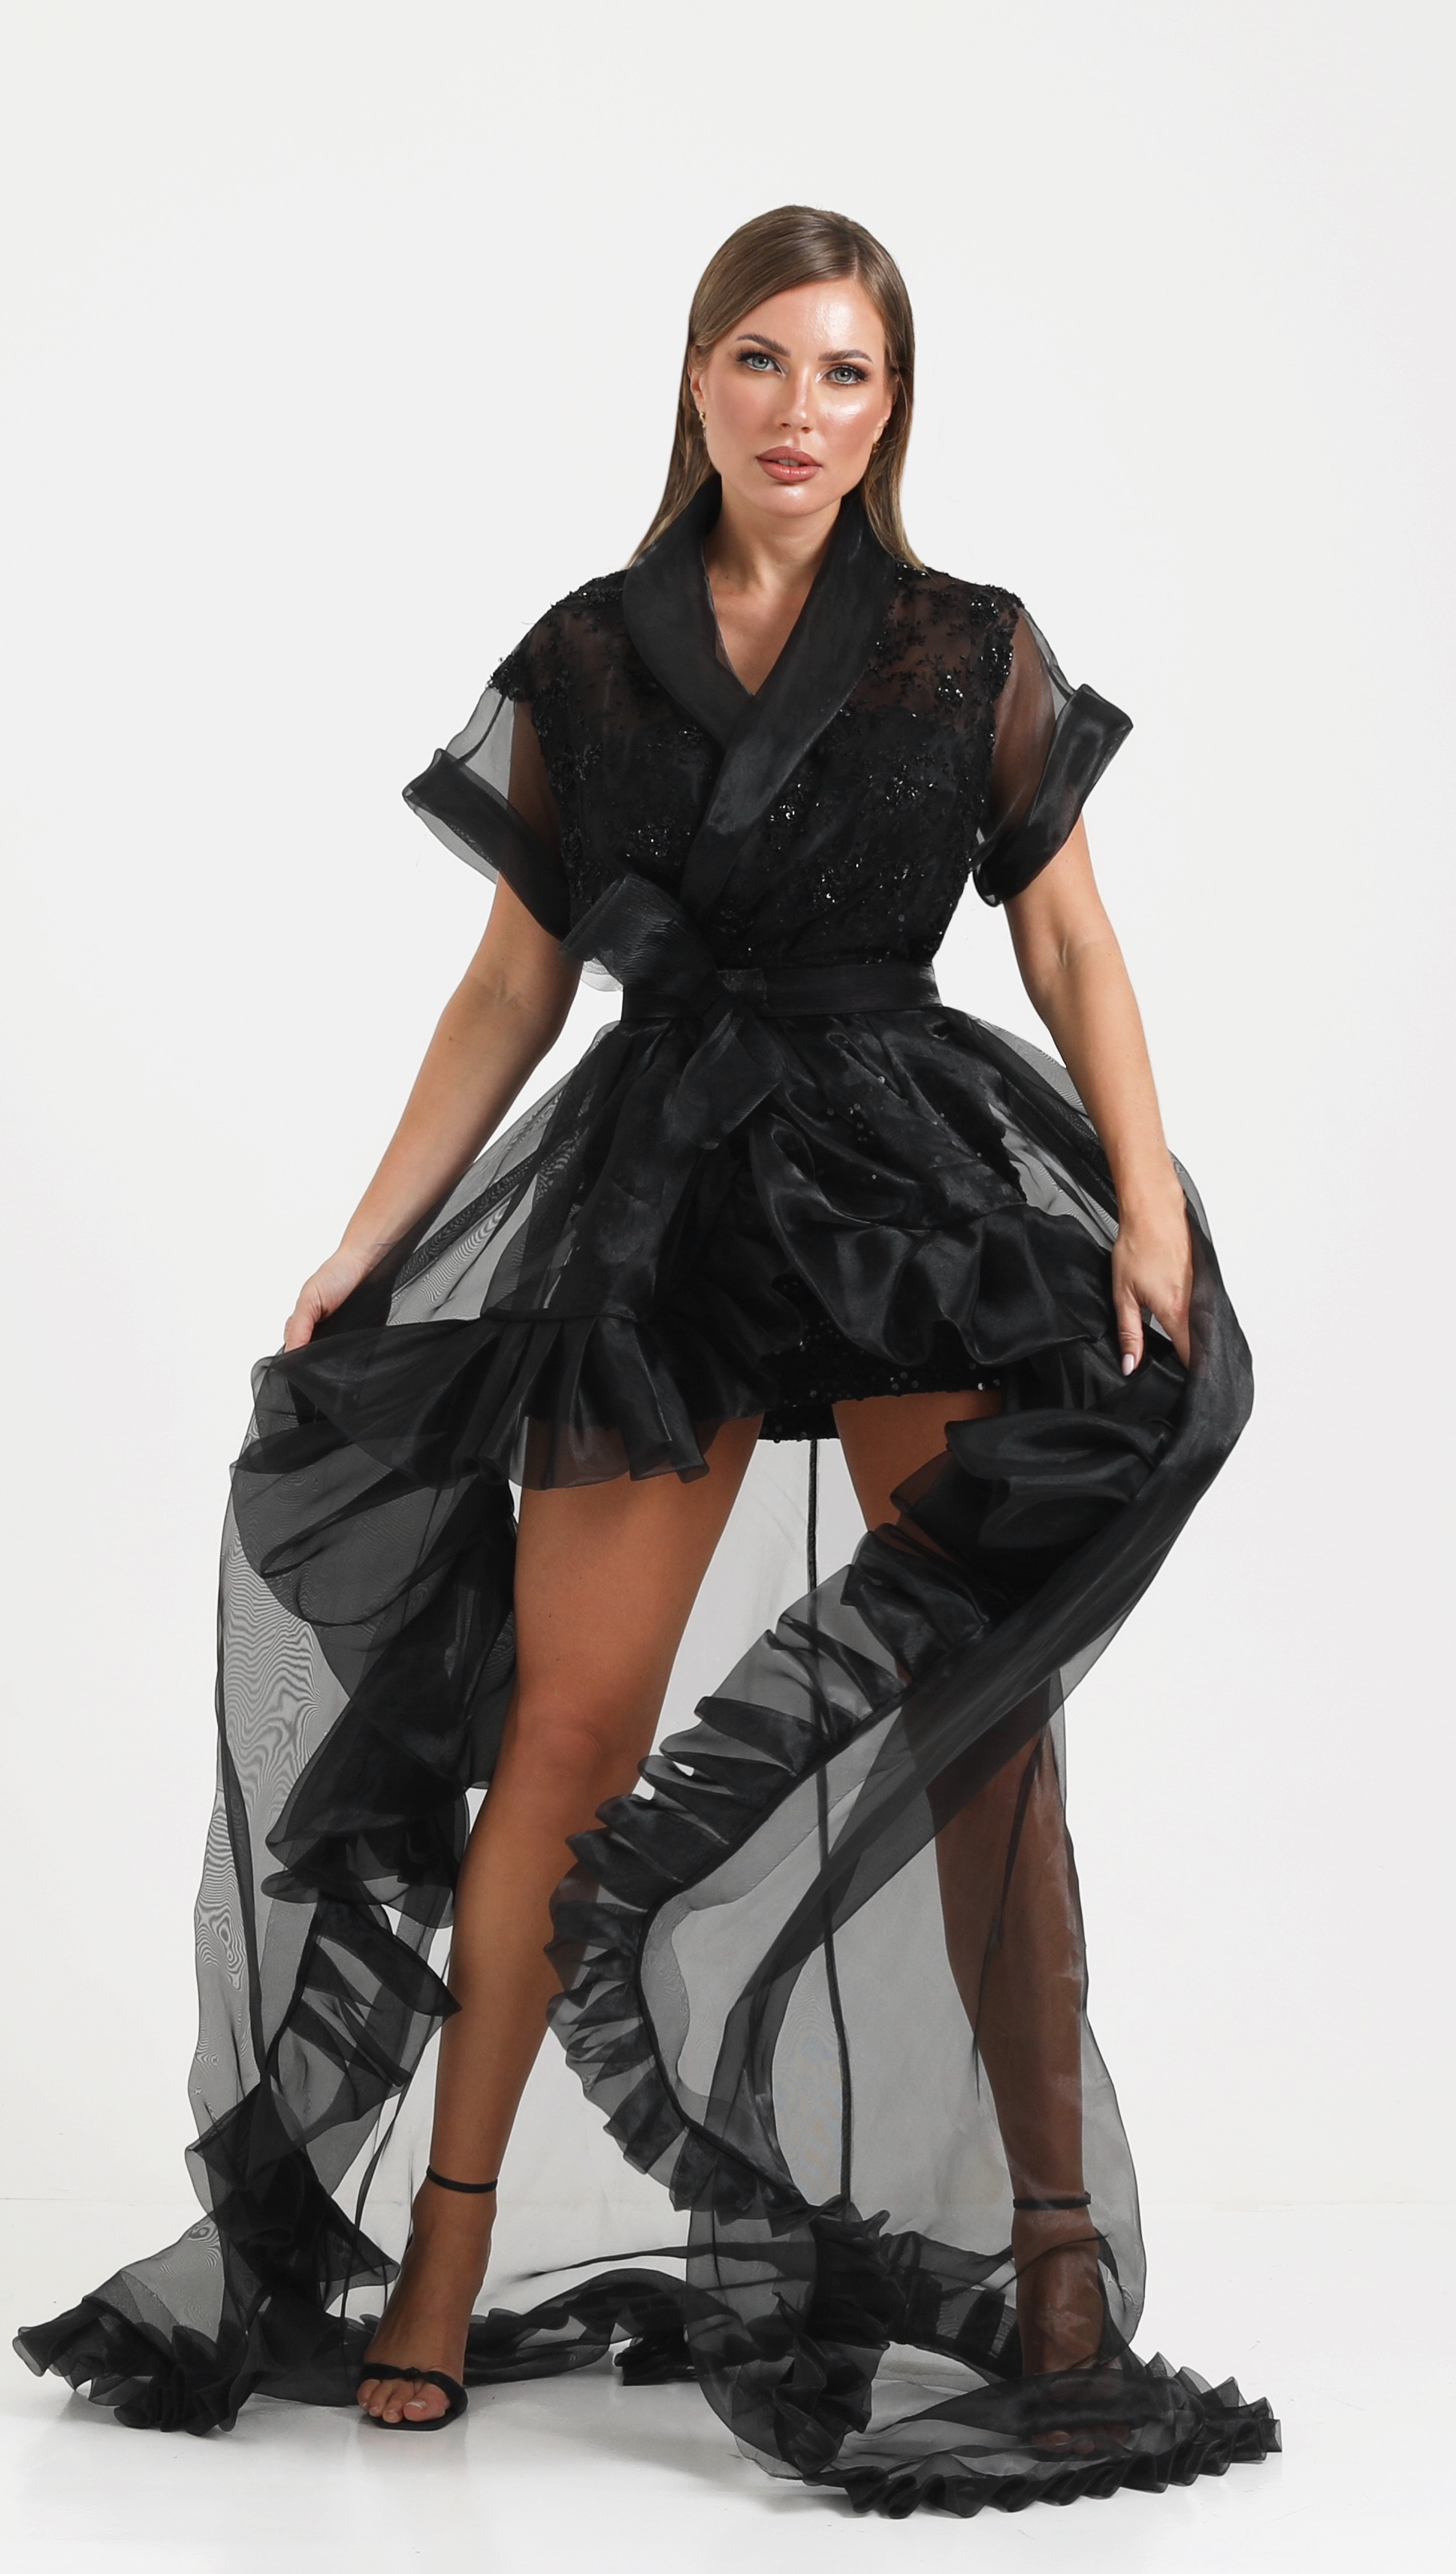 فستان سهرة عصري :  تصميم فريد بإطلالة عصرية